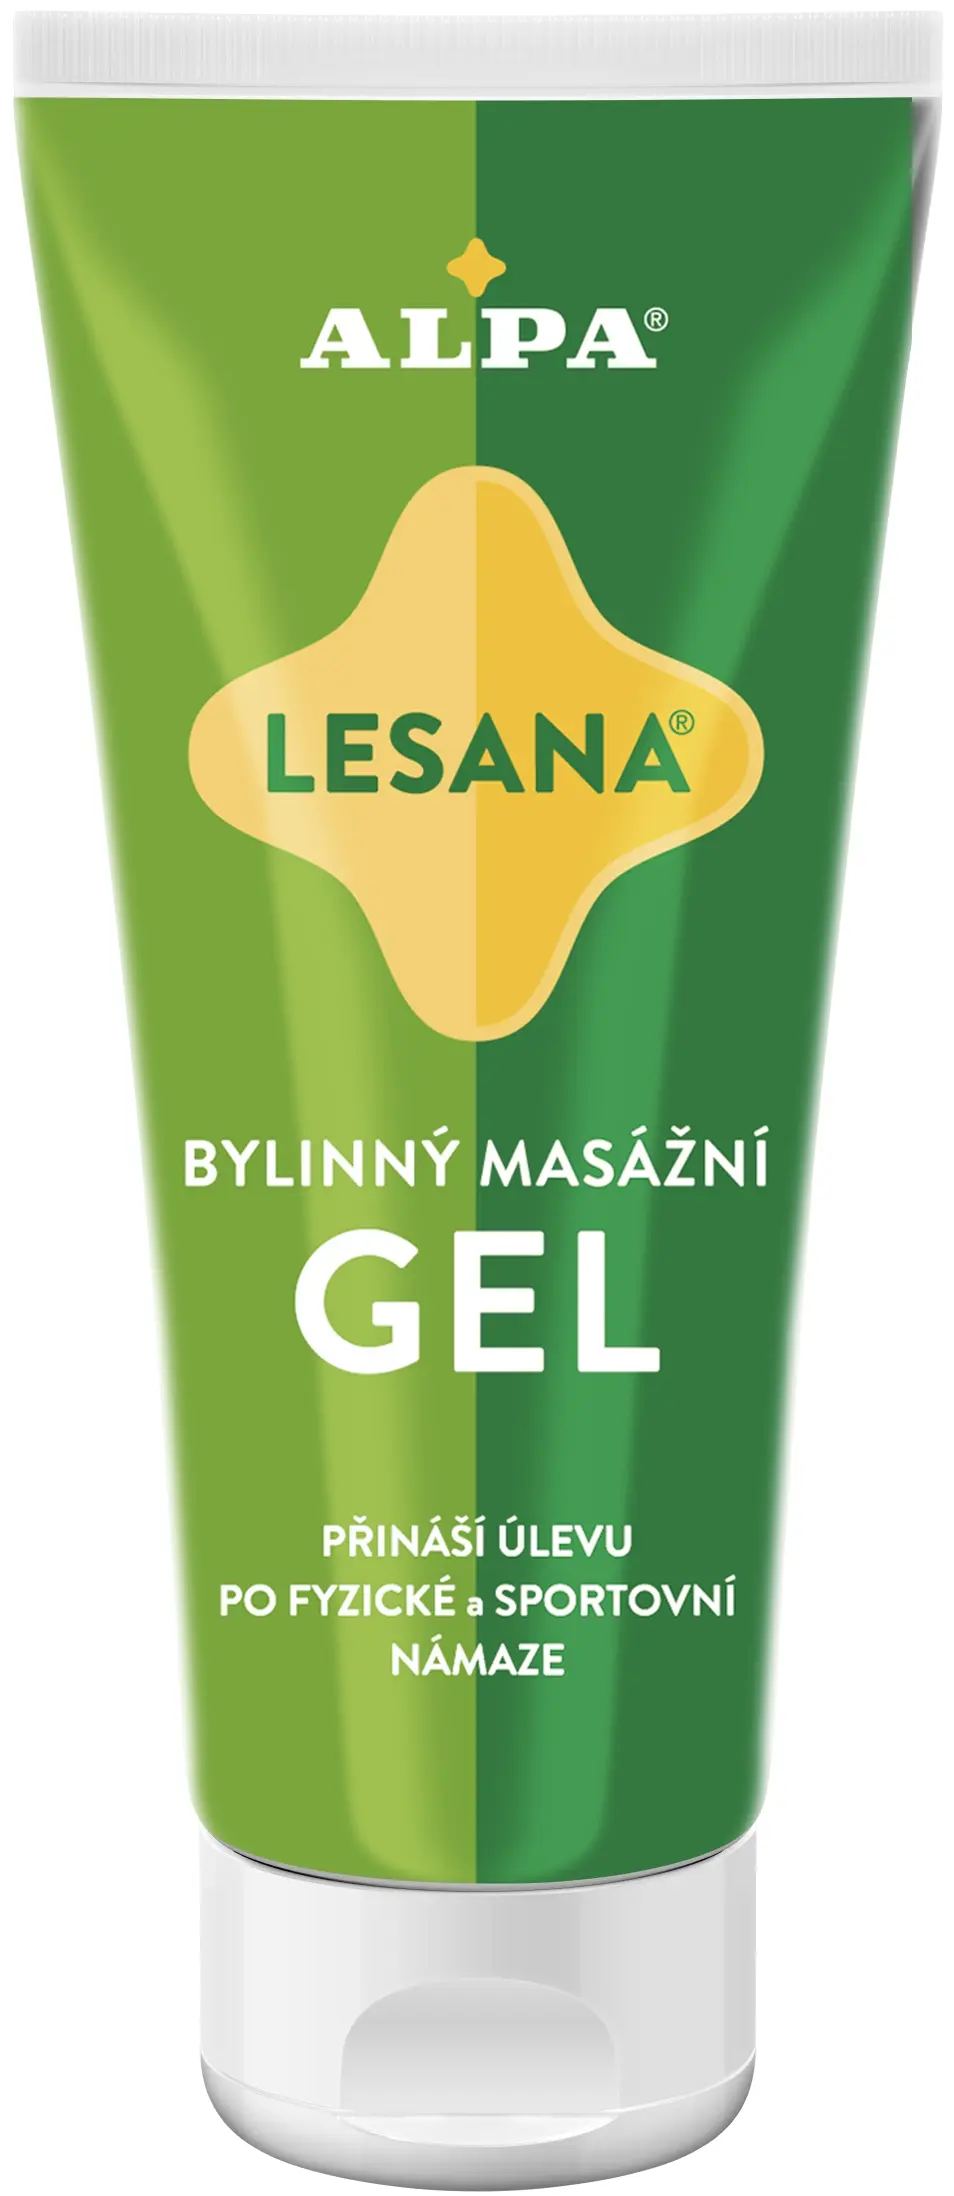 Alpa bylinný masážní gel Lesana 100 ml